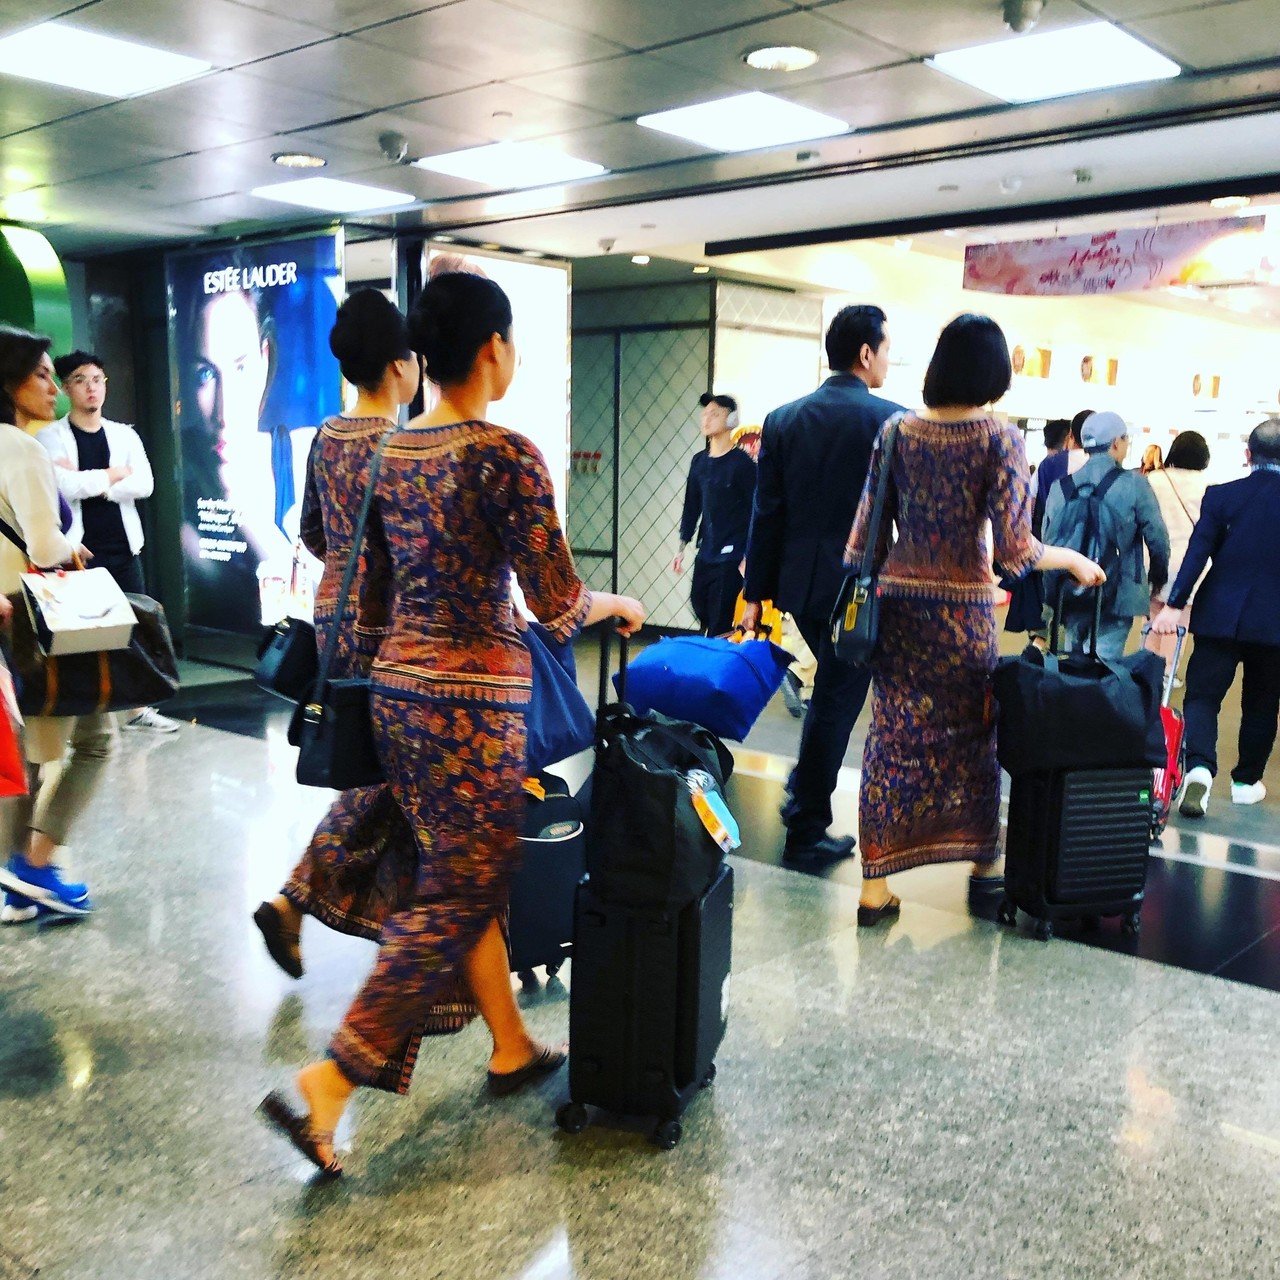 シンガポール航空のcaさんのエキゾチックな制服が綺麗 民族衣装な感じで 台湾桃園国際空港でかなり目立ちました 久々にシンガポール行ってみたくなるわー シンガポール航空 Ca制服 日々つぶやき Ai Fujii Note